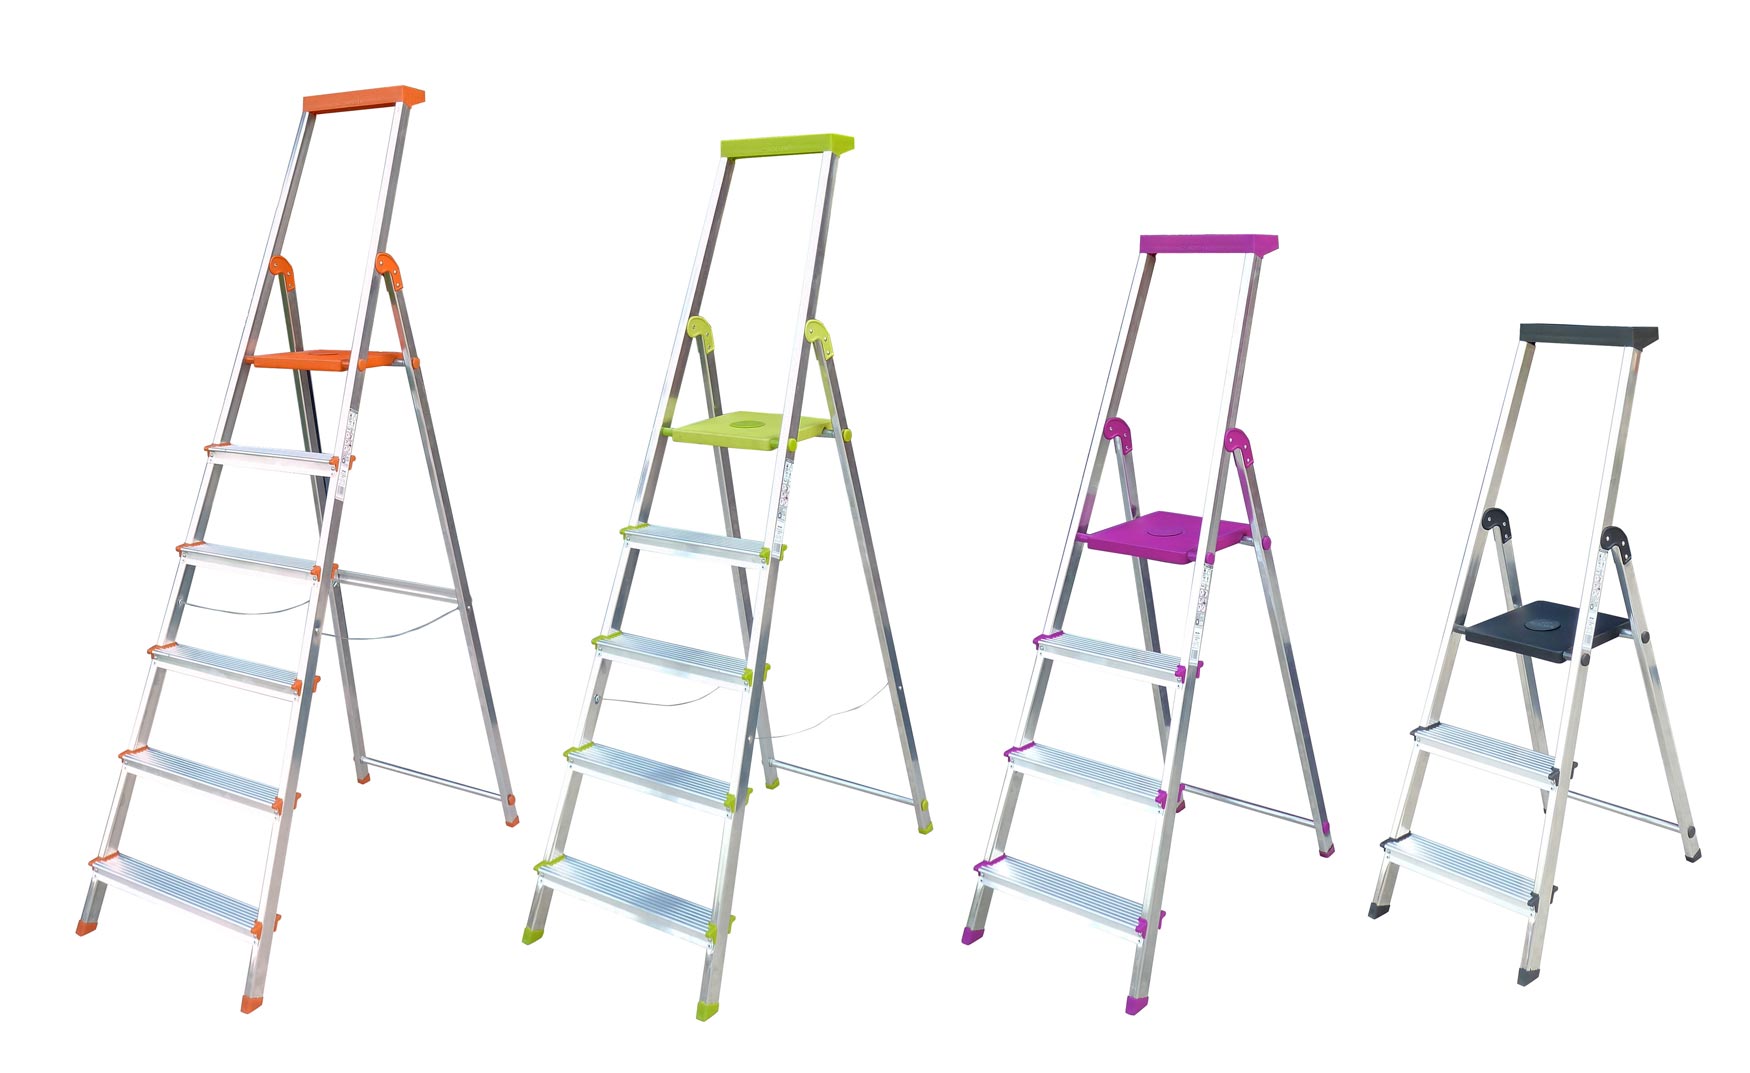 La escalera BriColor puede tener el acabado en diferentes colores: malva, lima, mandarina y antracita